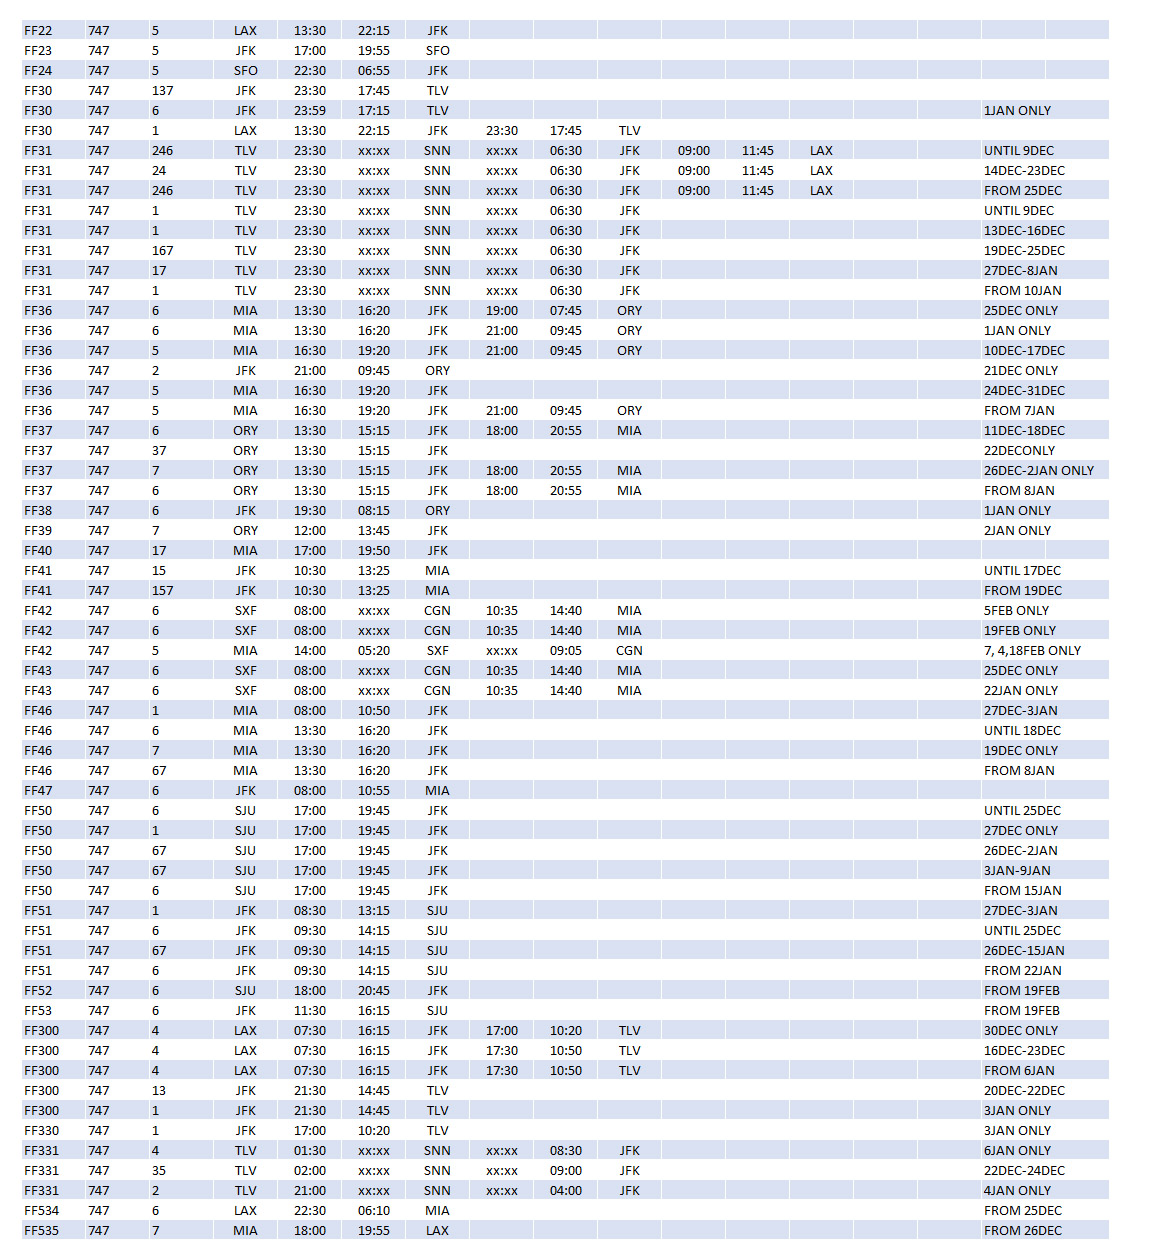 FF 747 Schedules Dec93